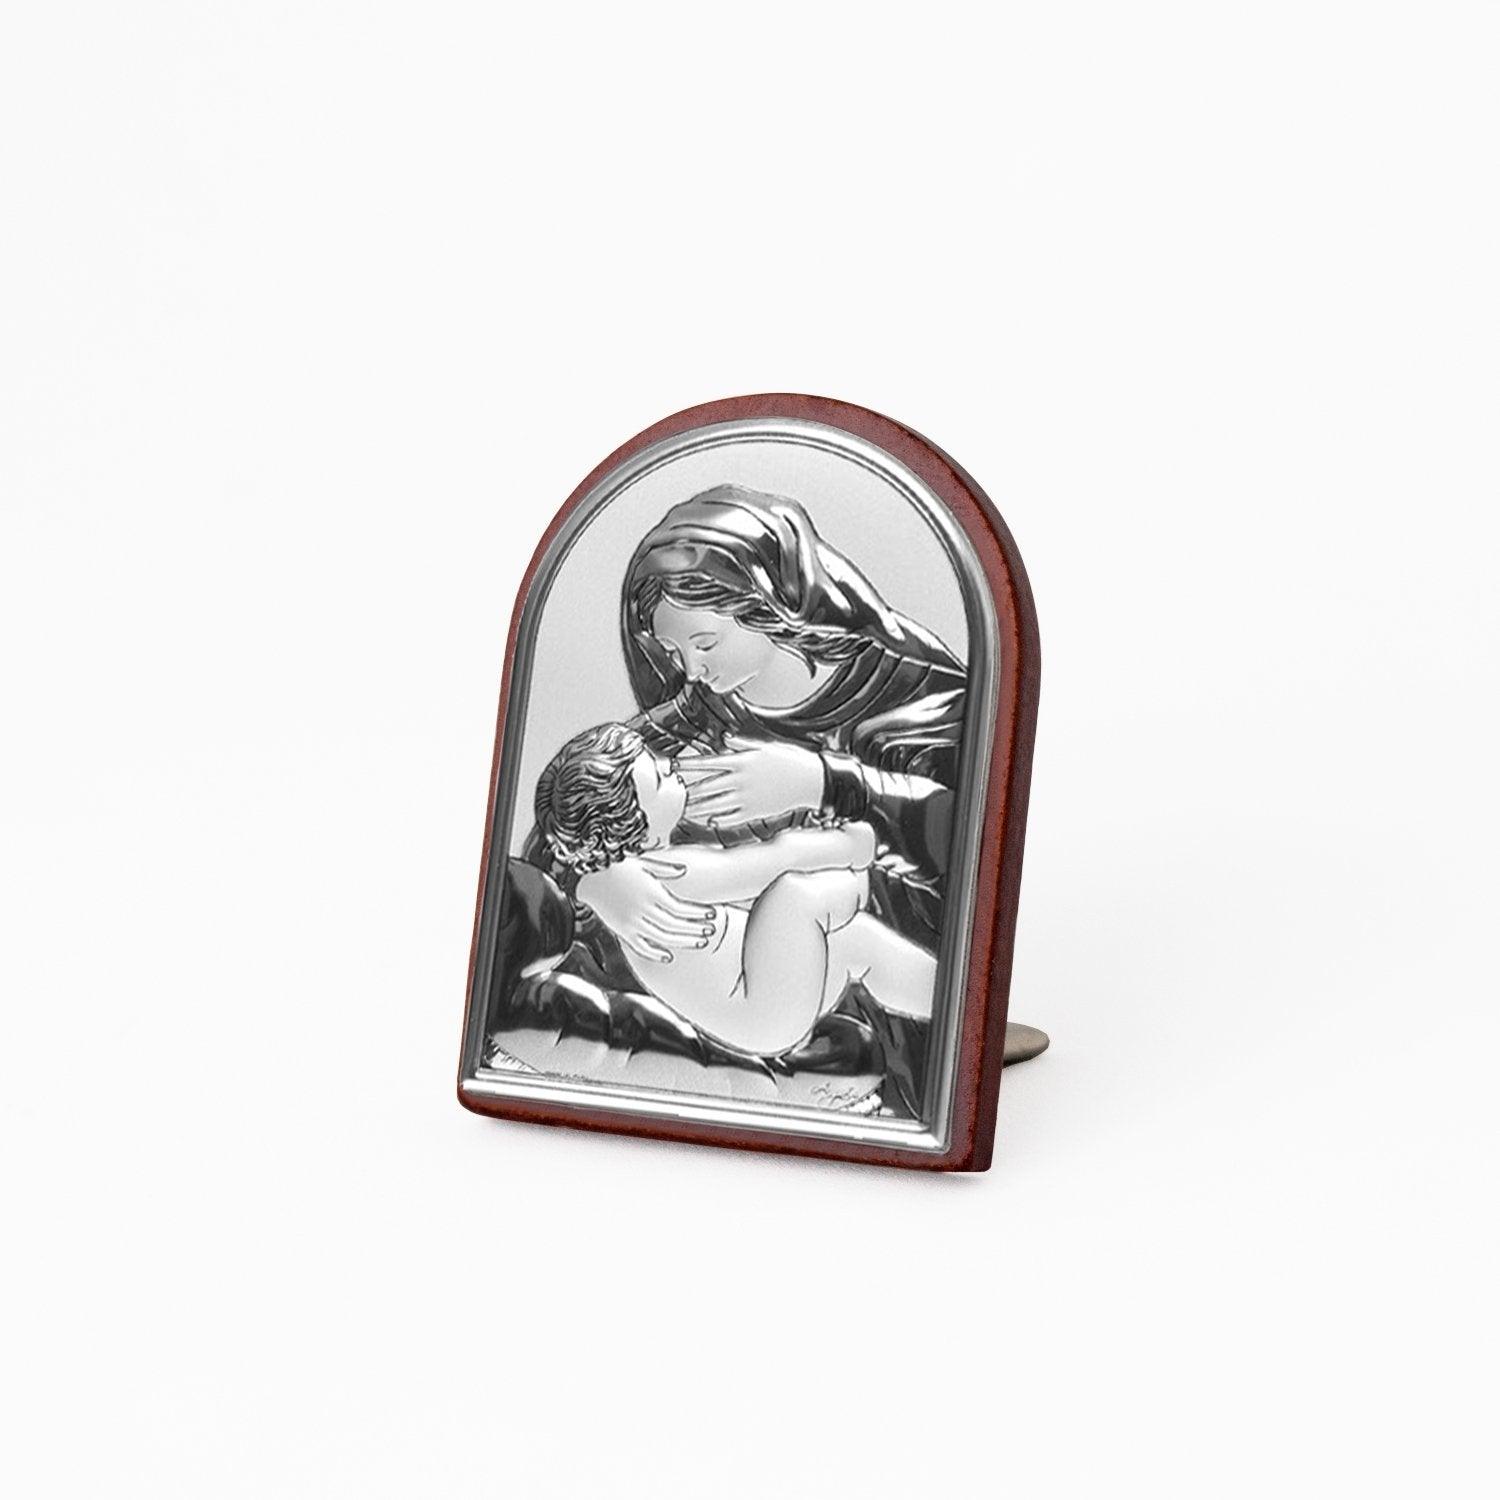 Icona Sacra Ad Arcata in Argento Laminato Con Retro In Legno da Appoggio e Muro Icone Sacre Albalu Bomboniere Madonna che Allatta Mini 